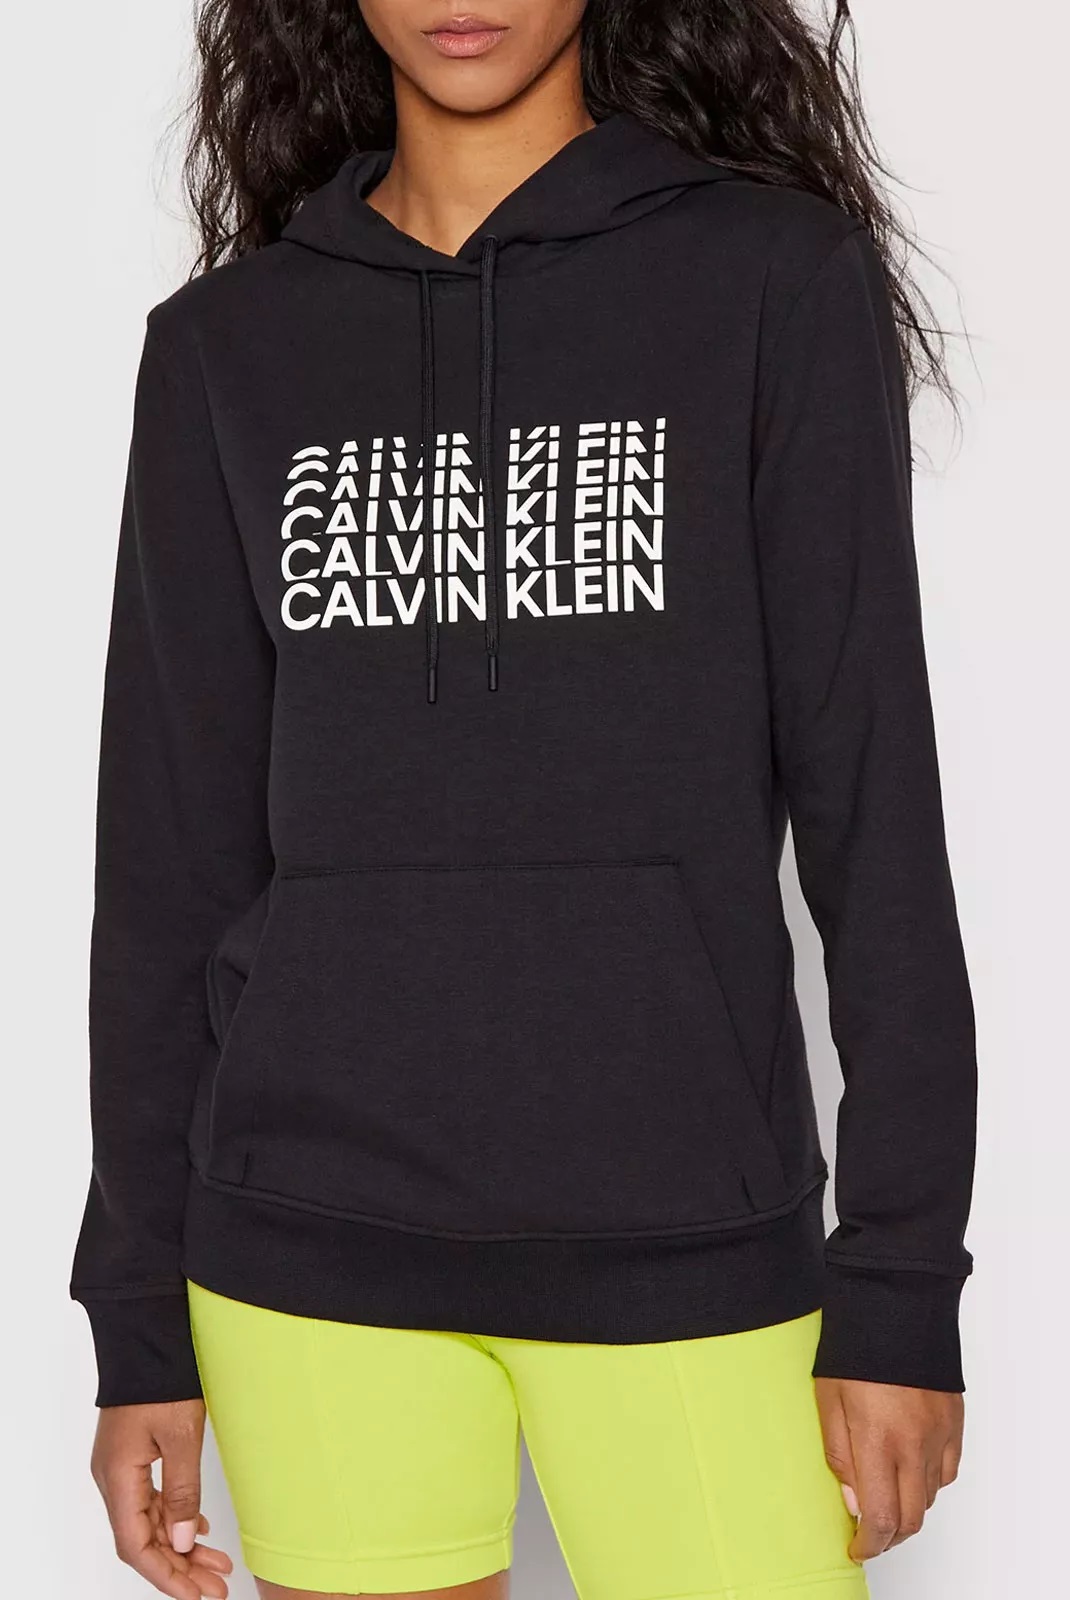 Calvin Klein dámská mikina s kapucí černá Velikost: S